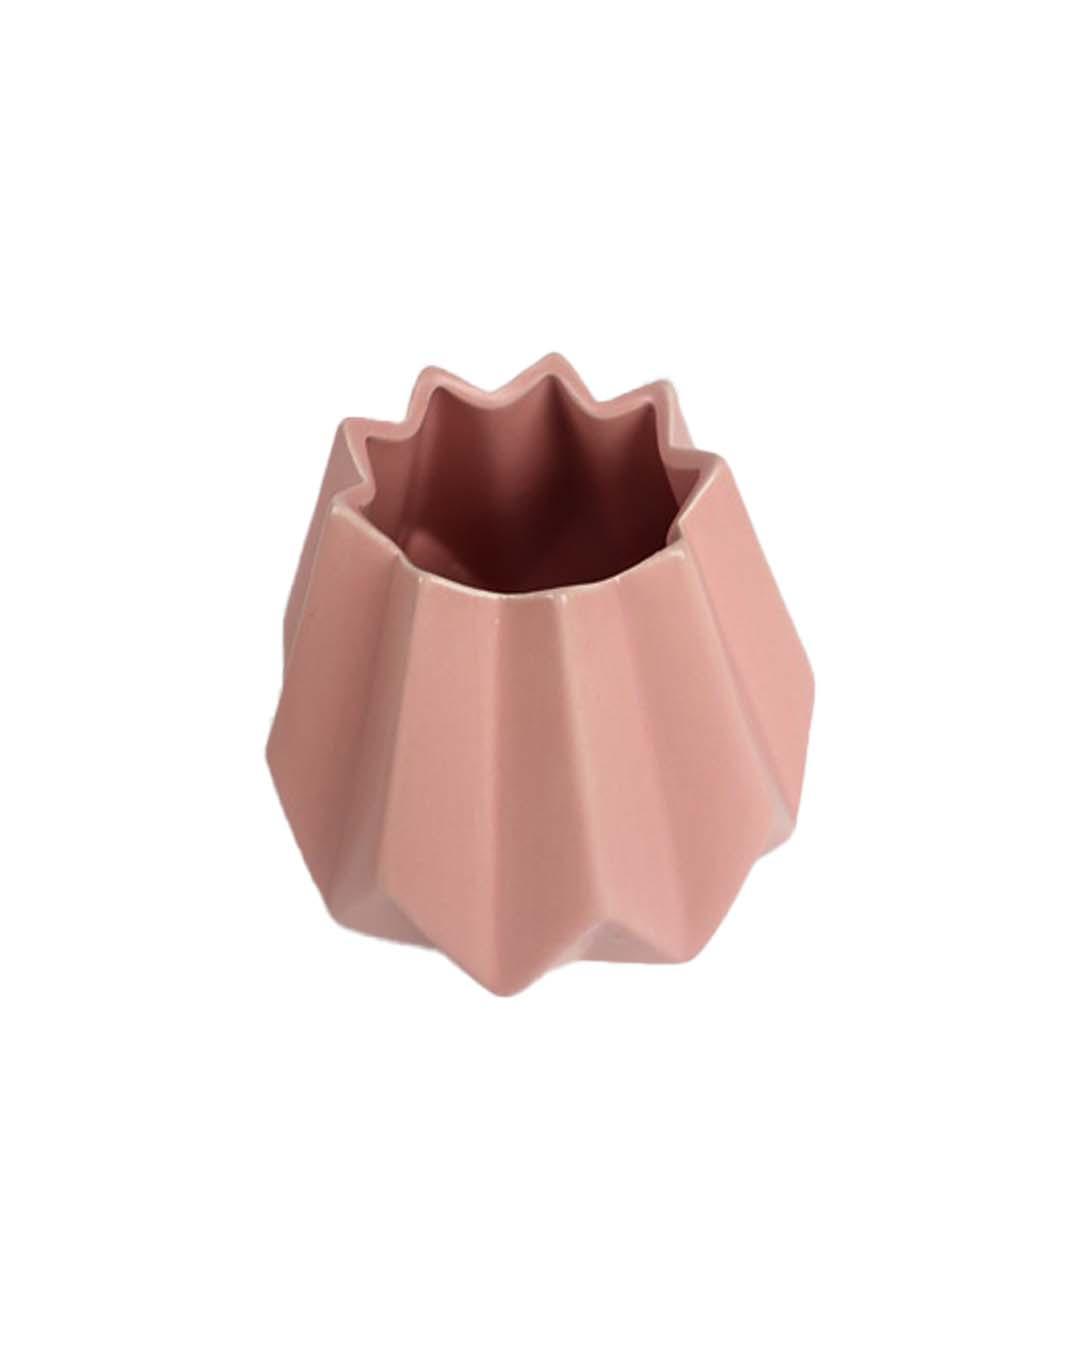 Nordic Vase, Peach, Ceramic - MARKET 99